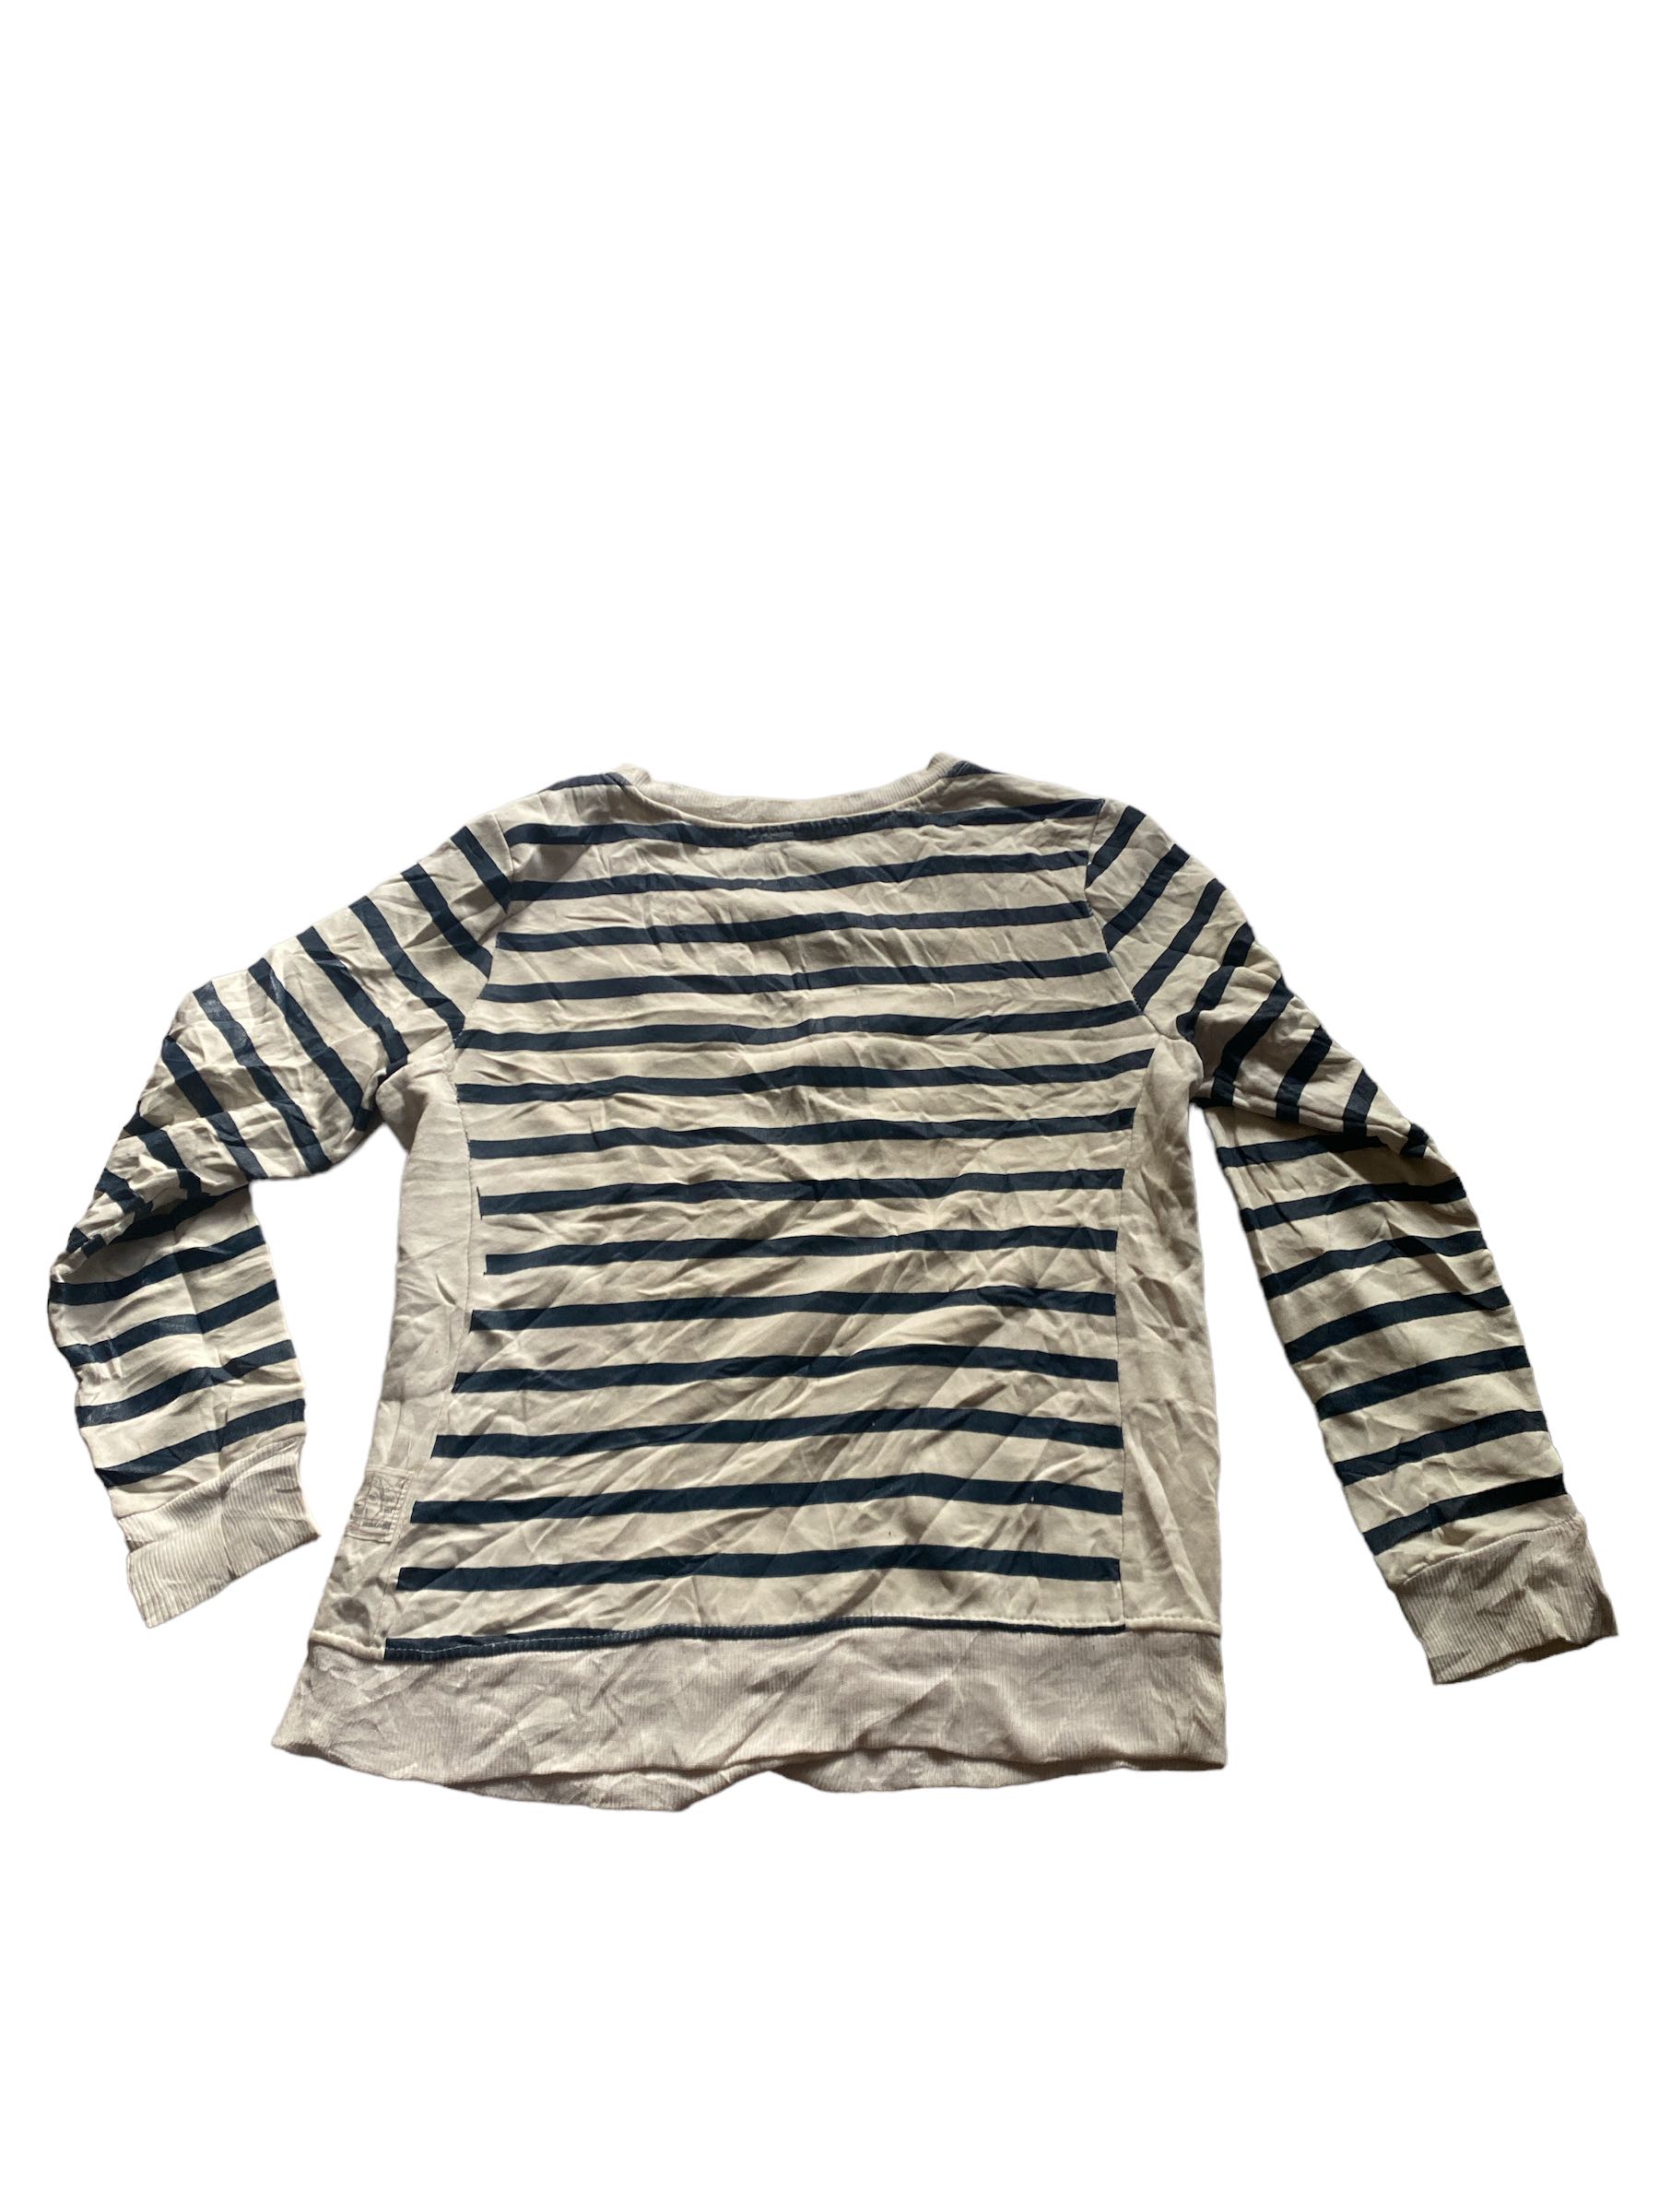 Vintage Evisu Sweatshirt - 1